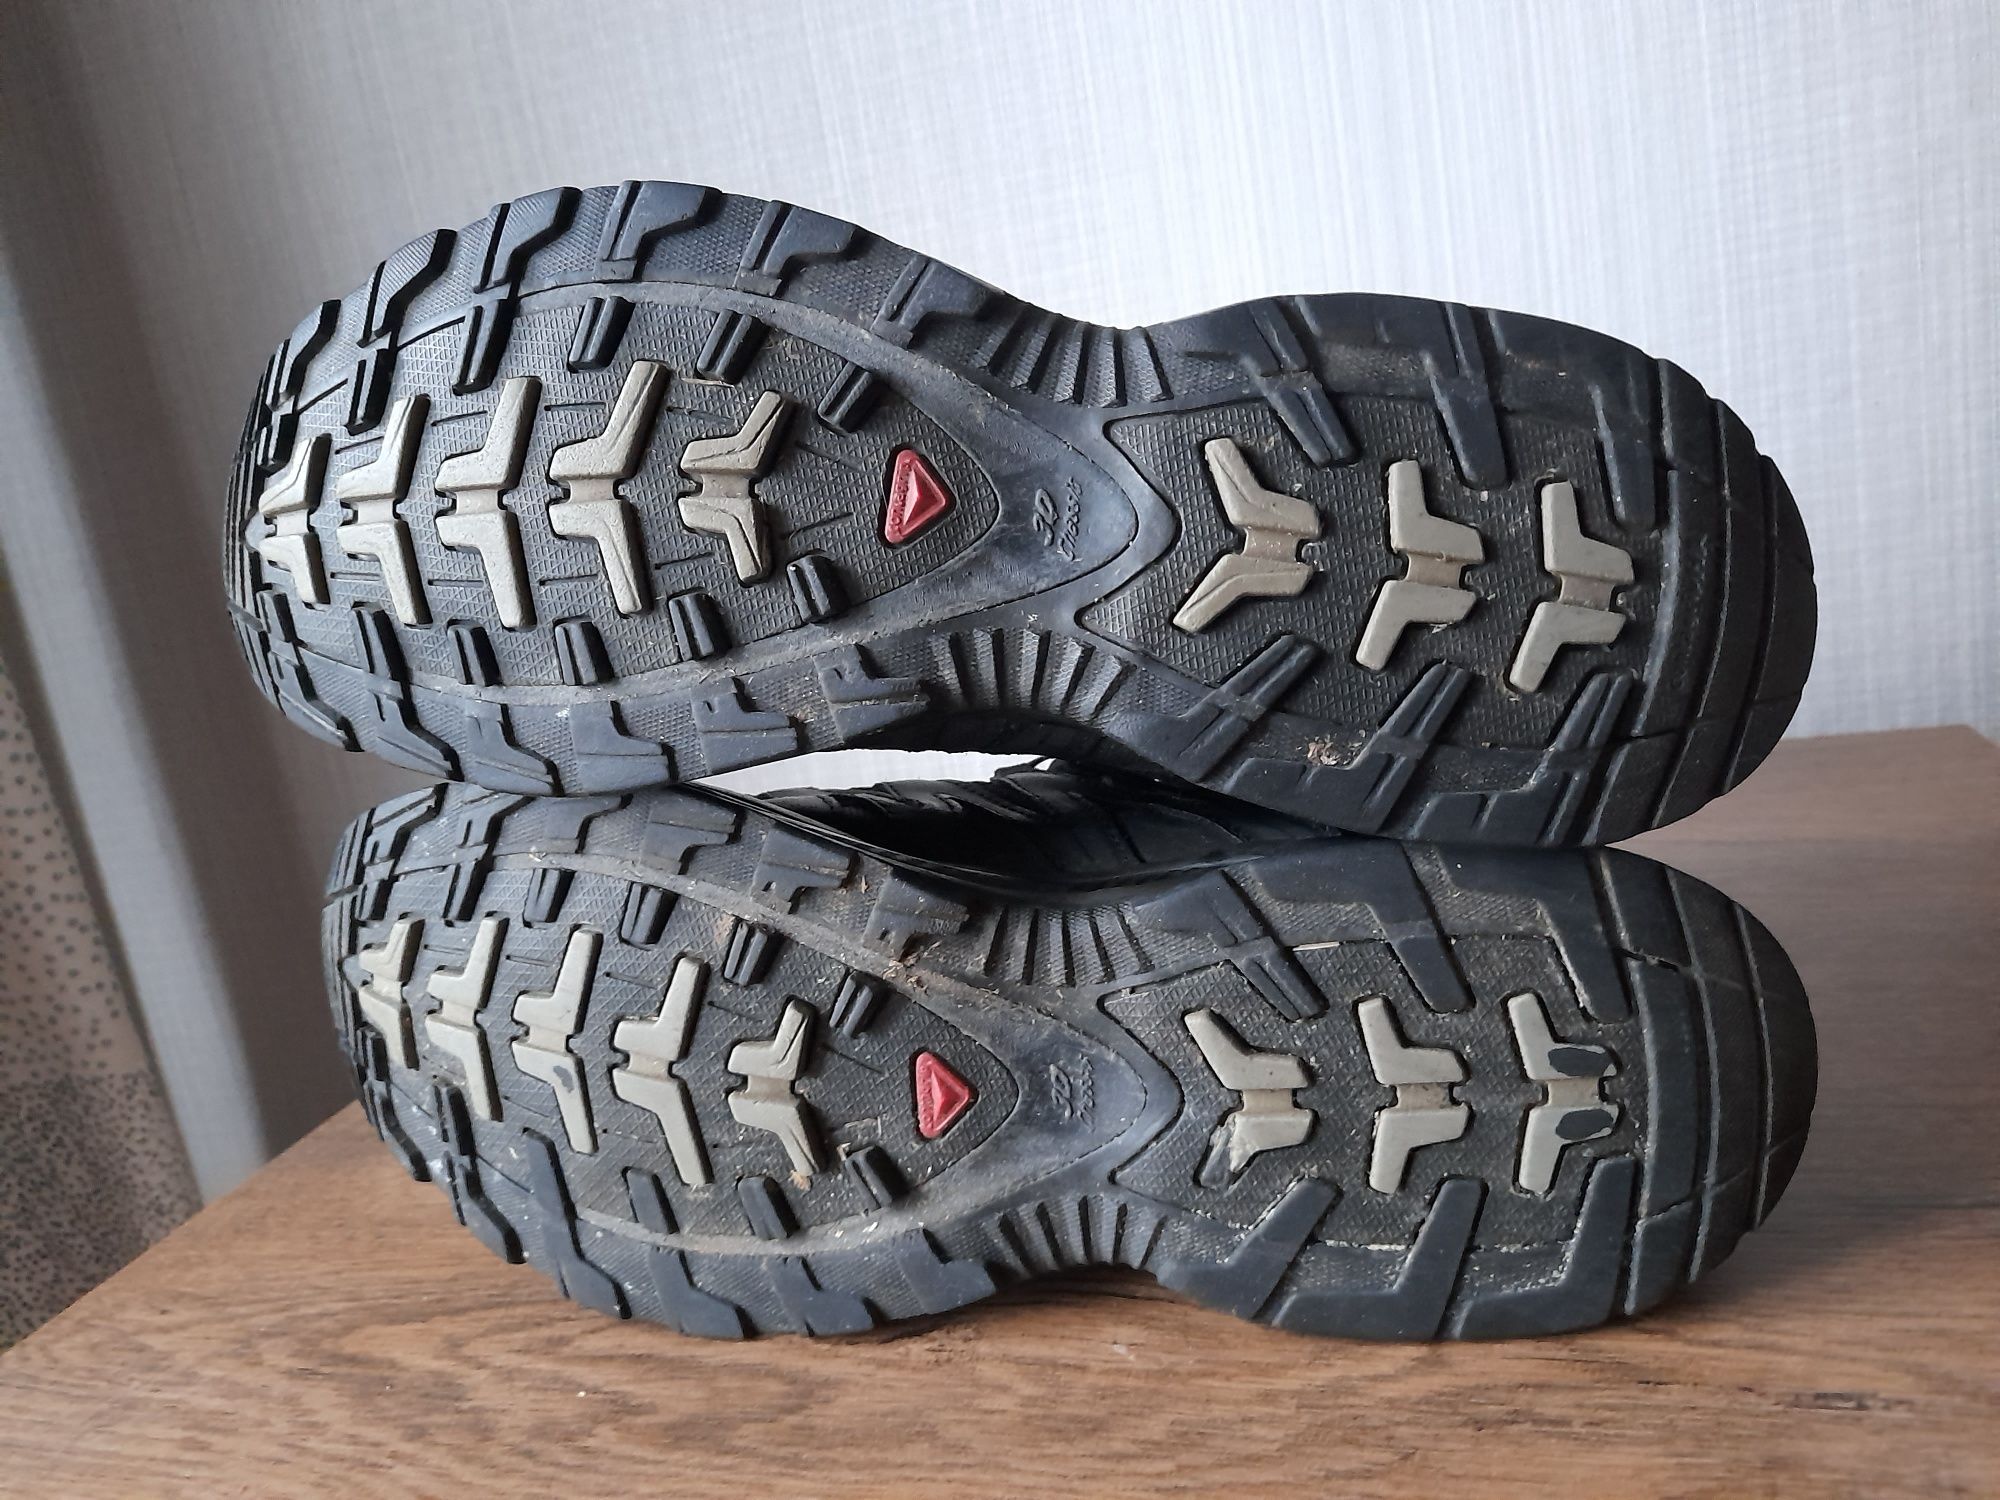 Salomon Xa pro 3D gore tex обувки 41номер.